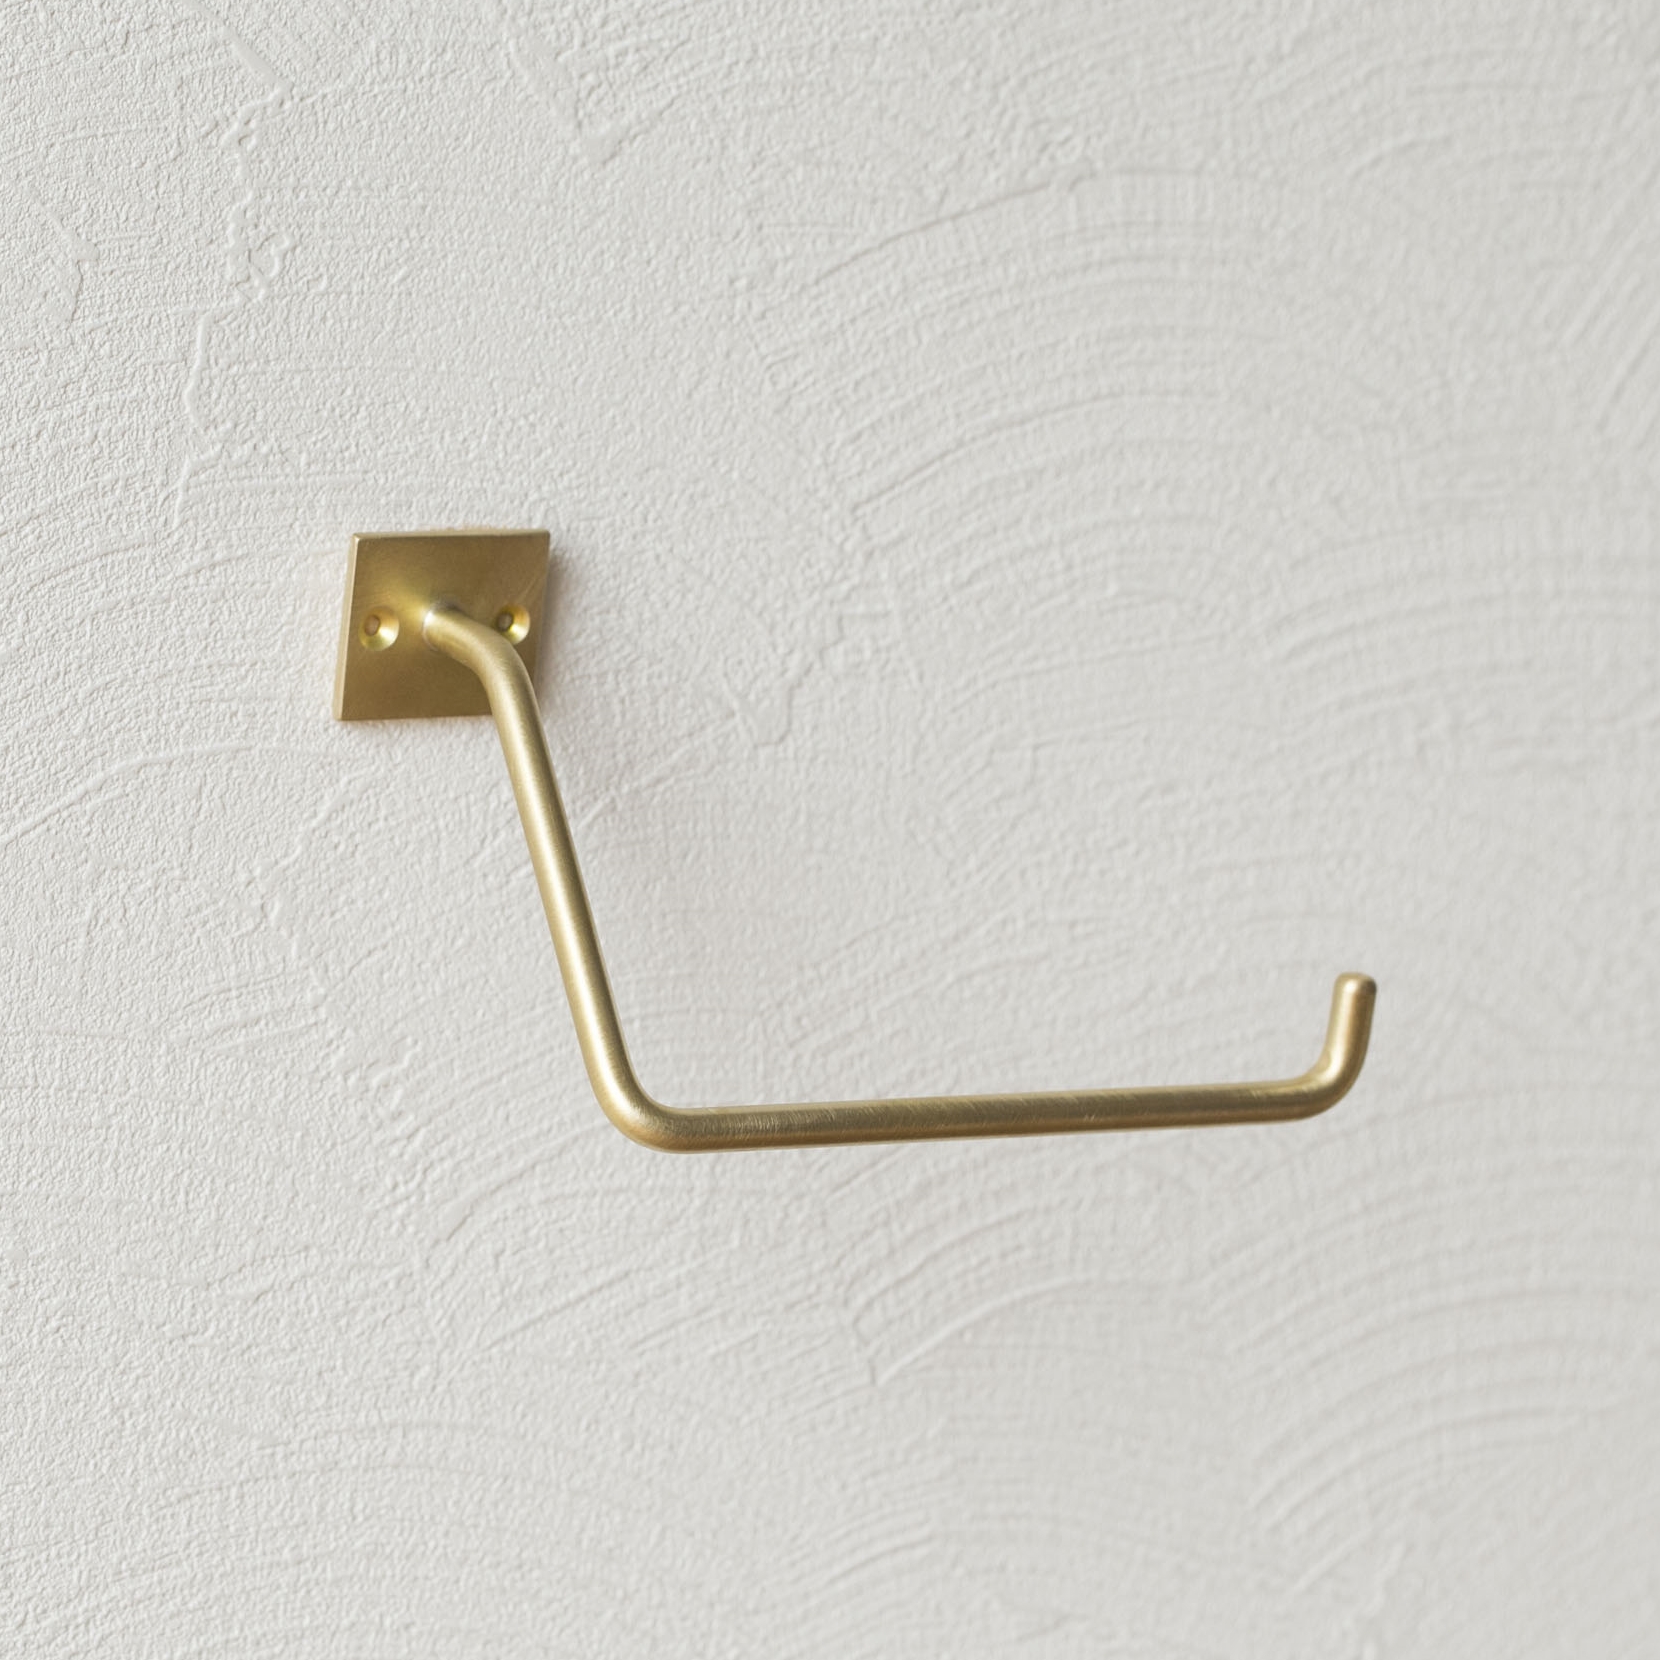 千葉工作所/Paper stocker Brass（ペーパーストッカー 真鍮） - トイレットペーパーの交換が楽な、絵になるストッカー